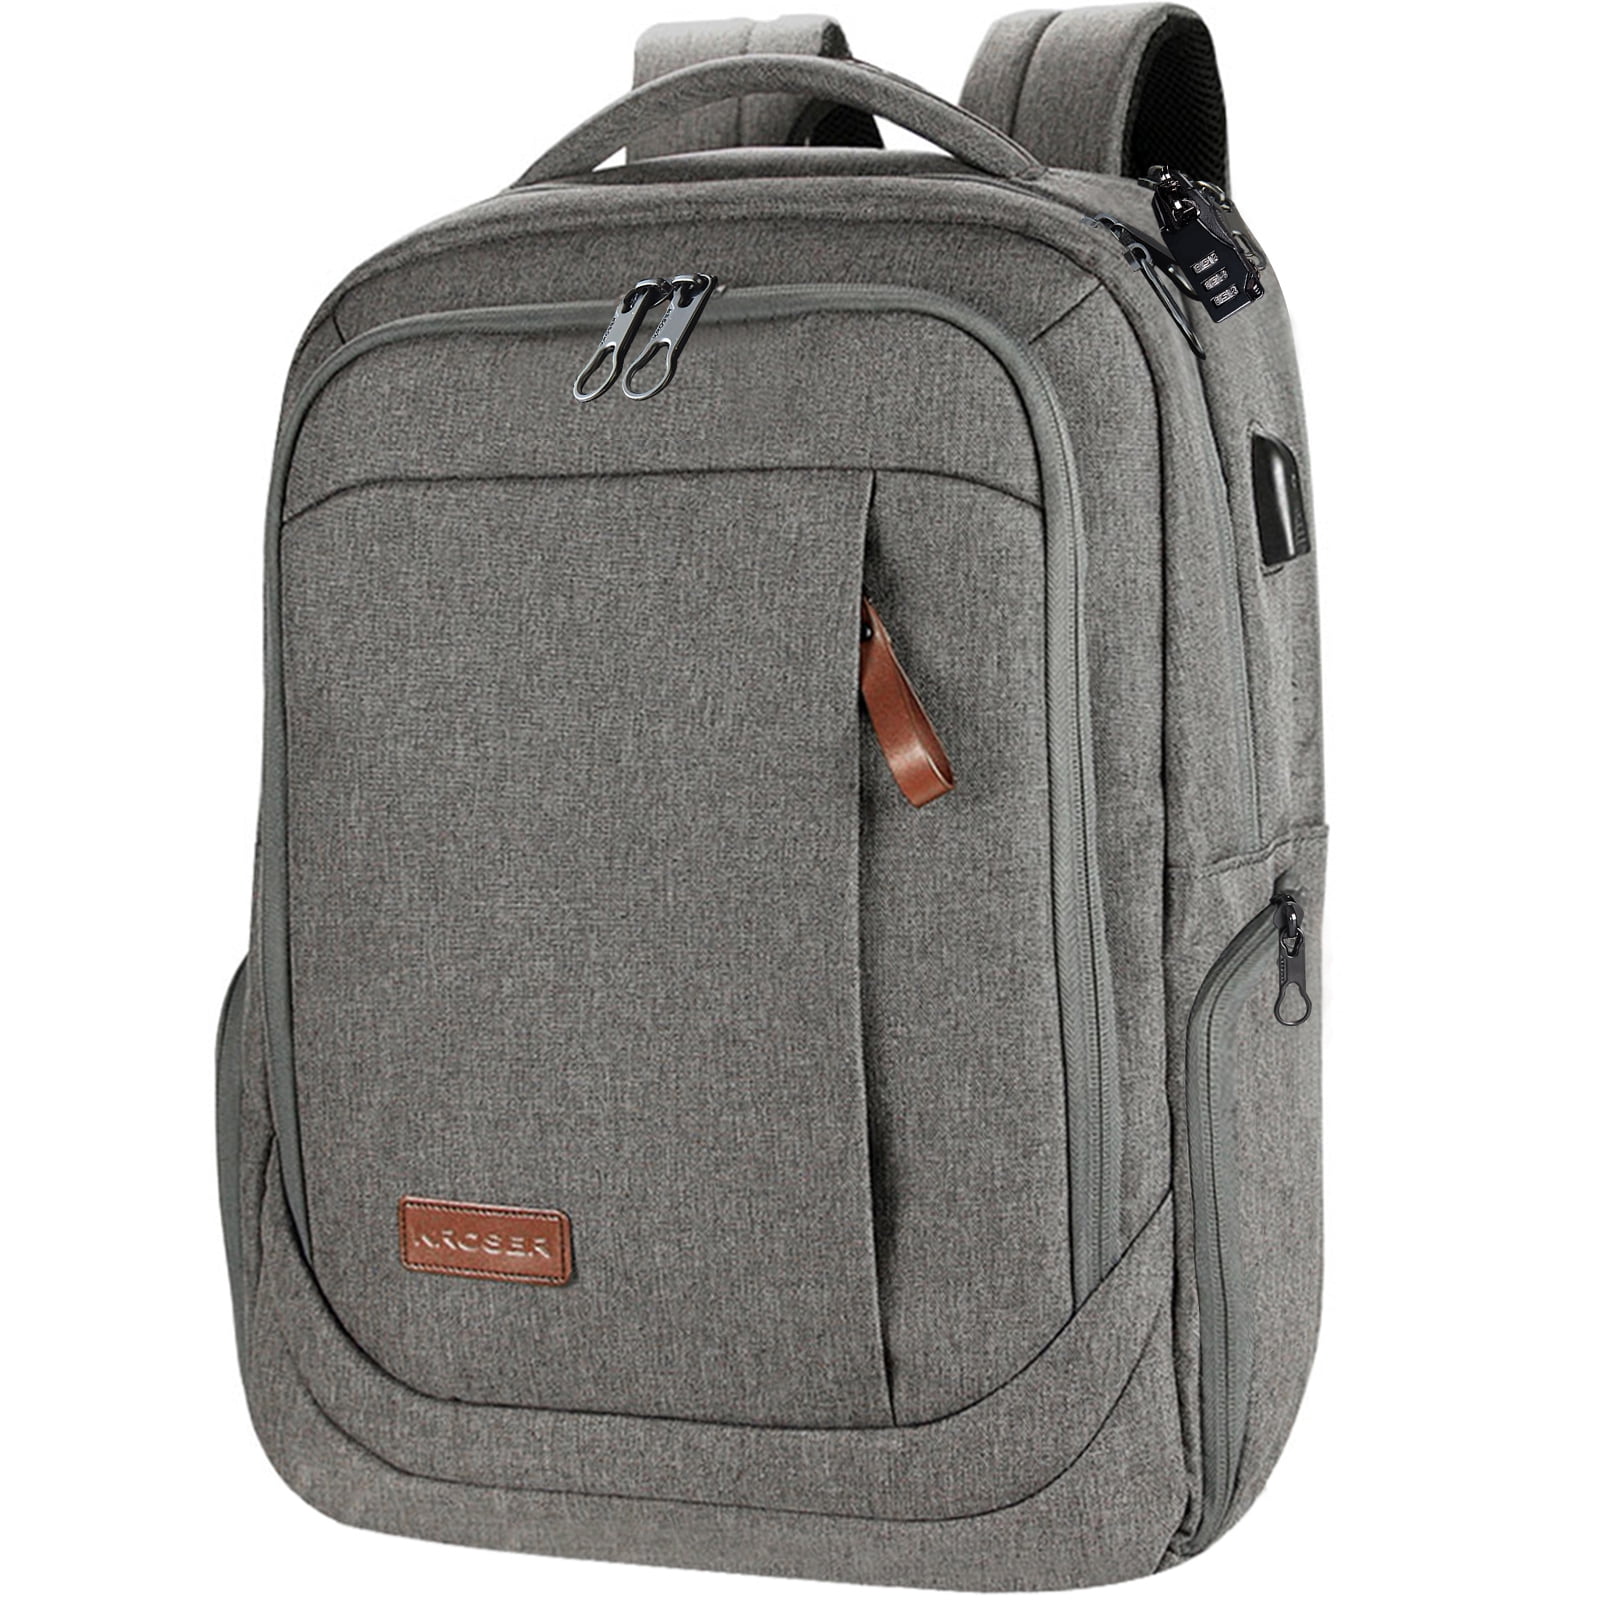 Laptop Backpacks for Women Men Little Daisy Large Rucksack Fit 17 Inch Computer Bookbag for School Business Travel Shopping